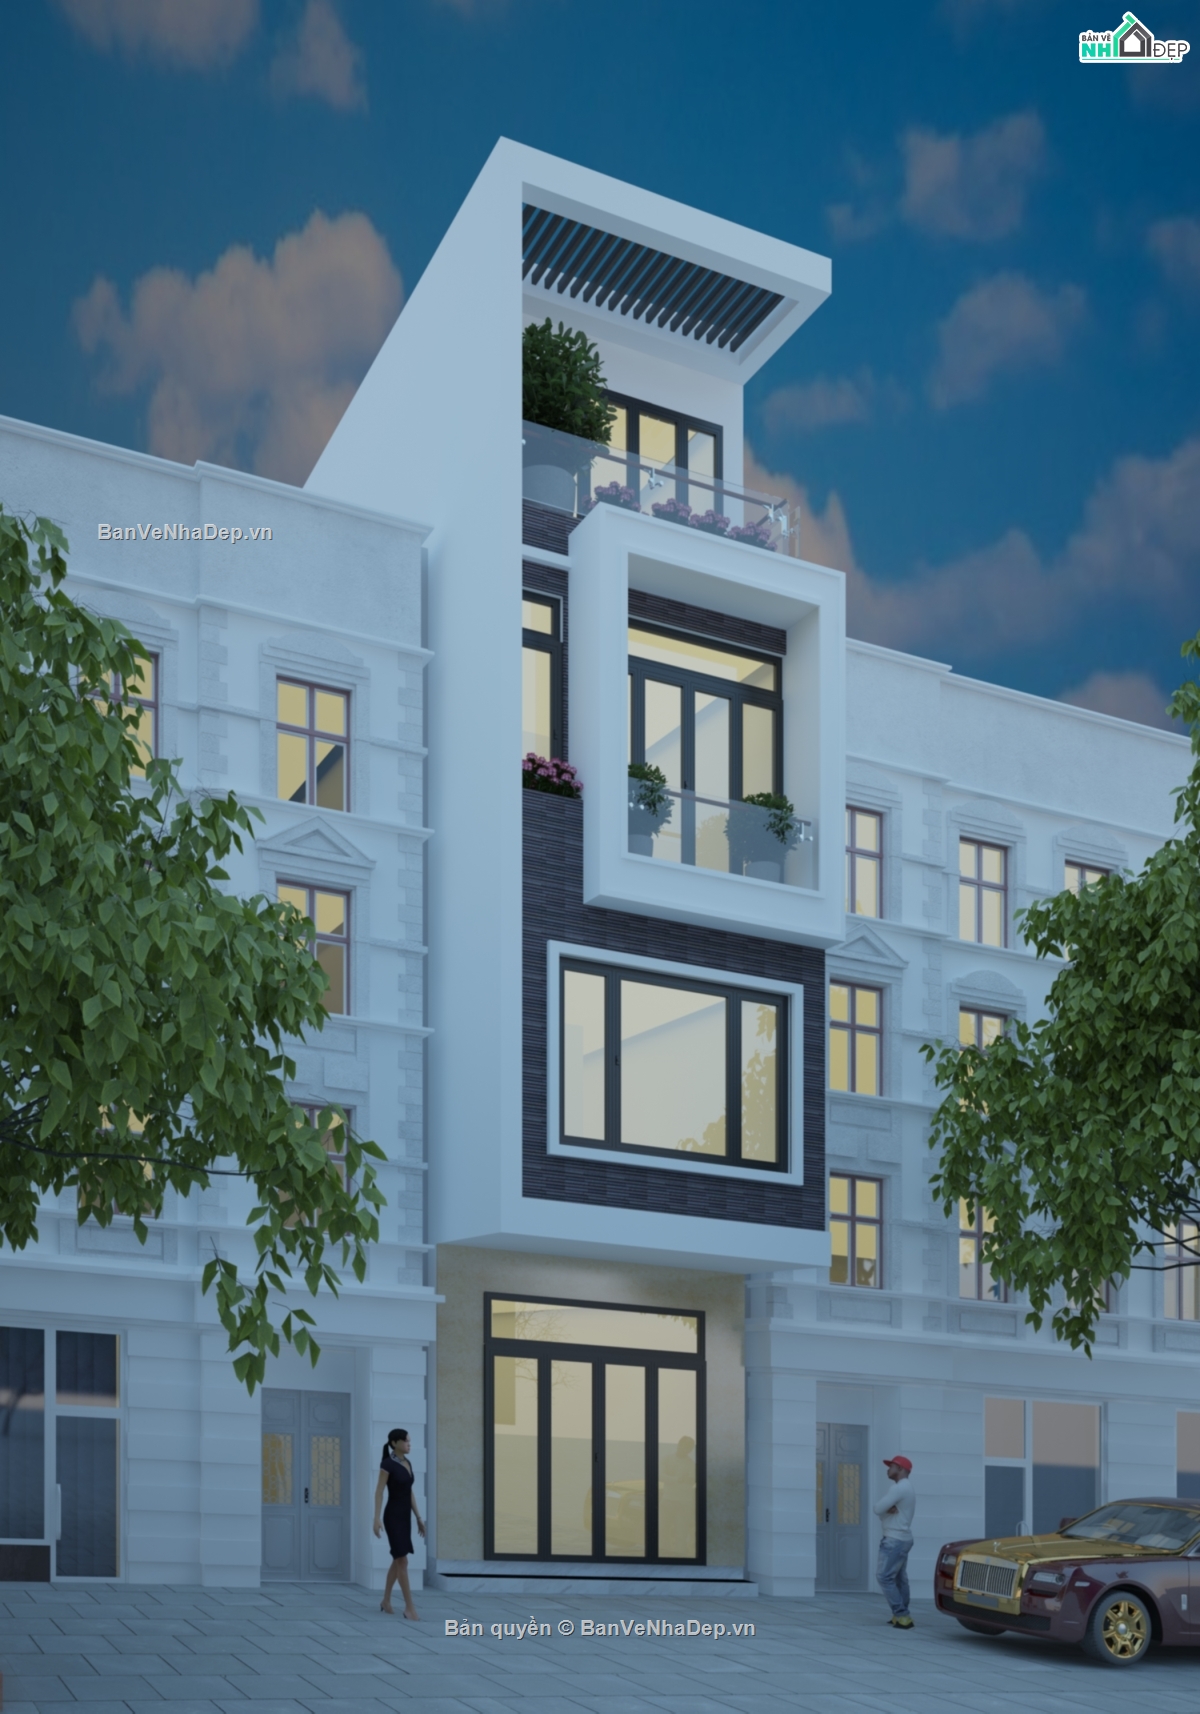 bản vẽ nhà phố 4 tầng,mẫu nhà phố 4 tầng,file cad nhà phố 4 tầng,thiết kế nhà phố 4 tầng